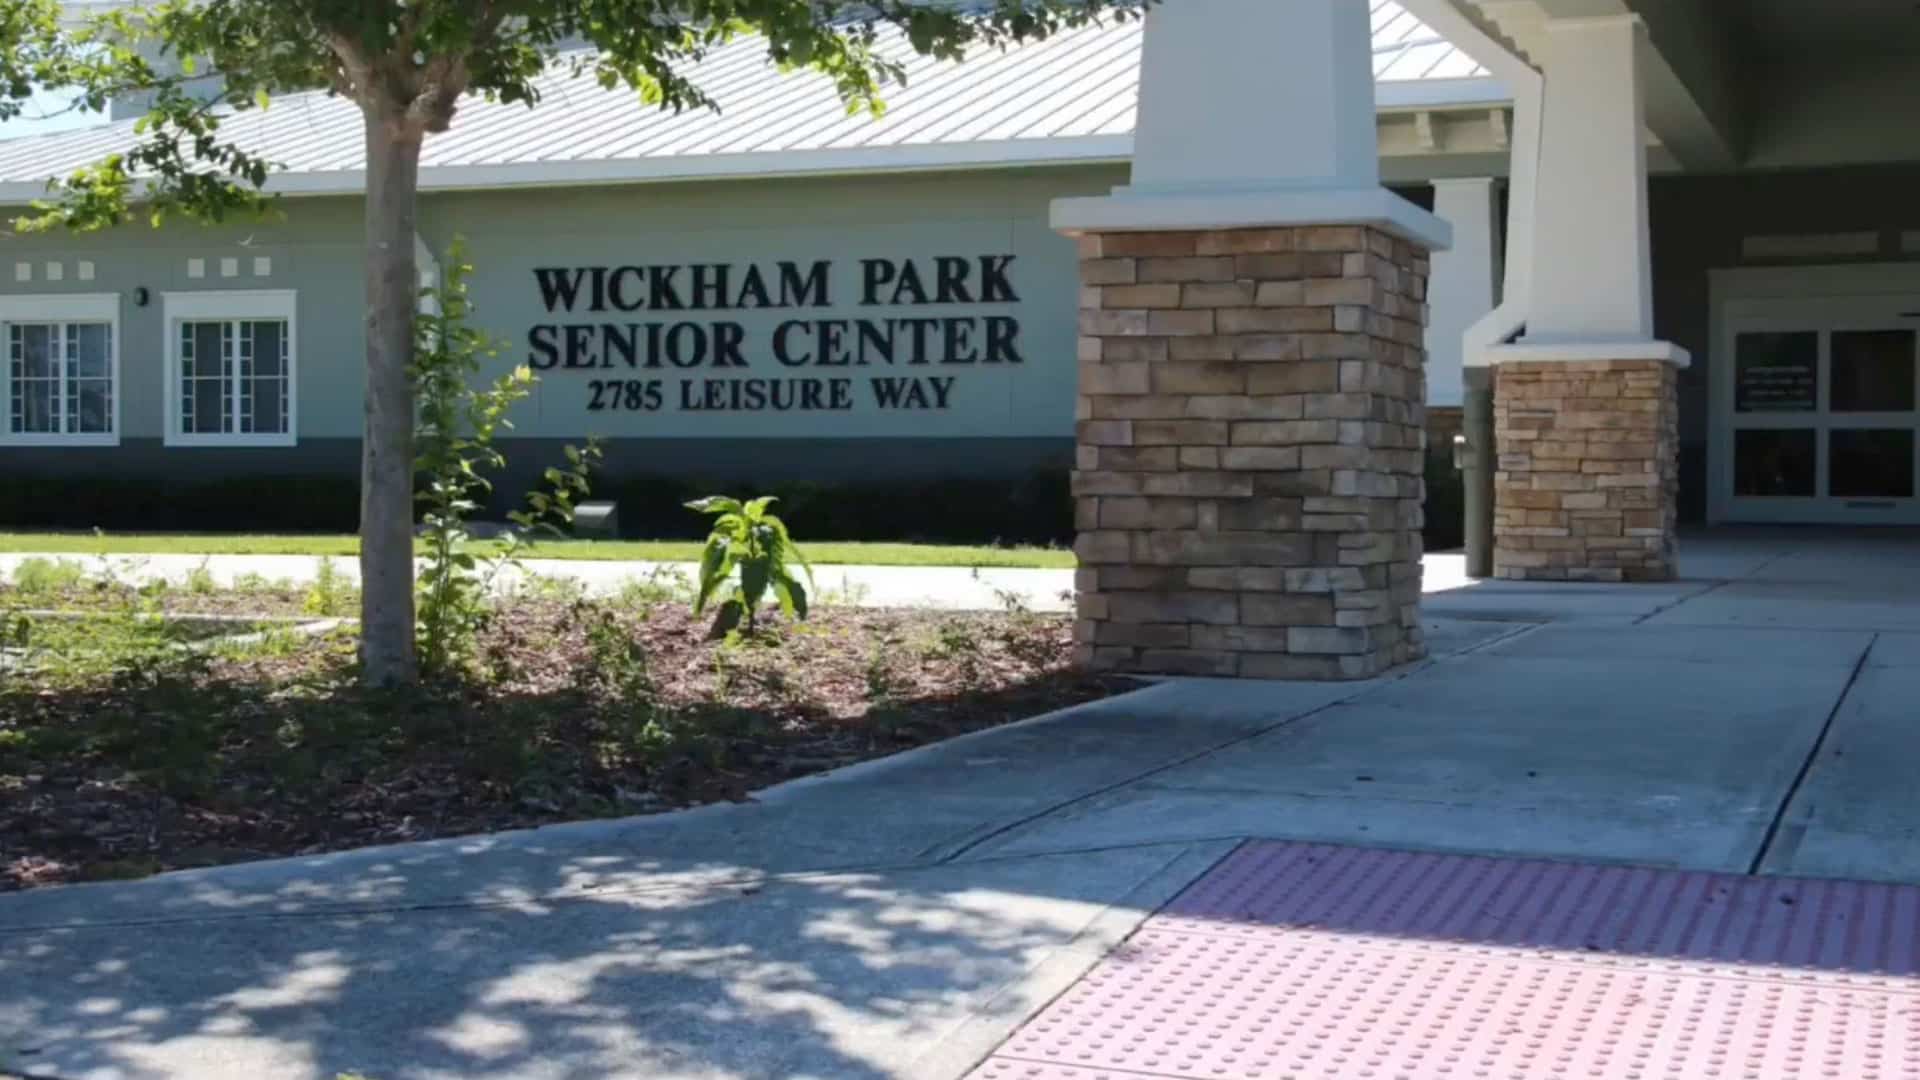 Wickham Park Senior Center